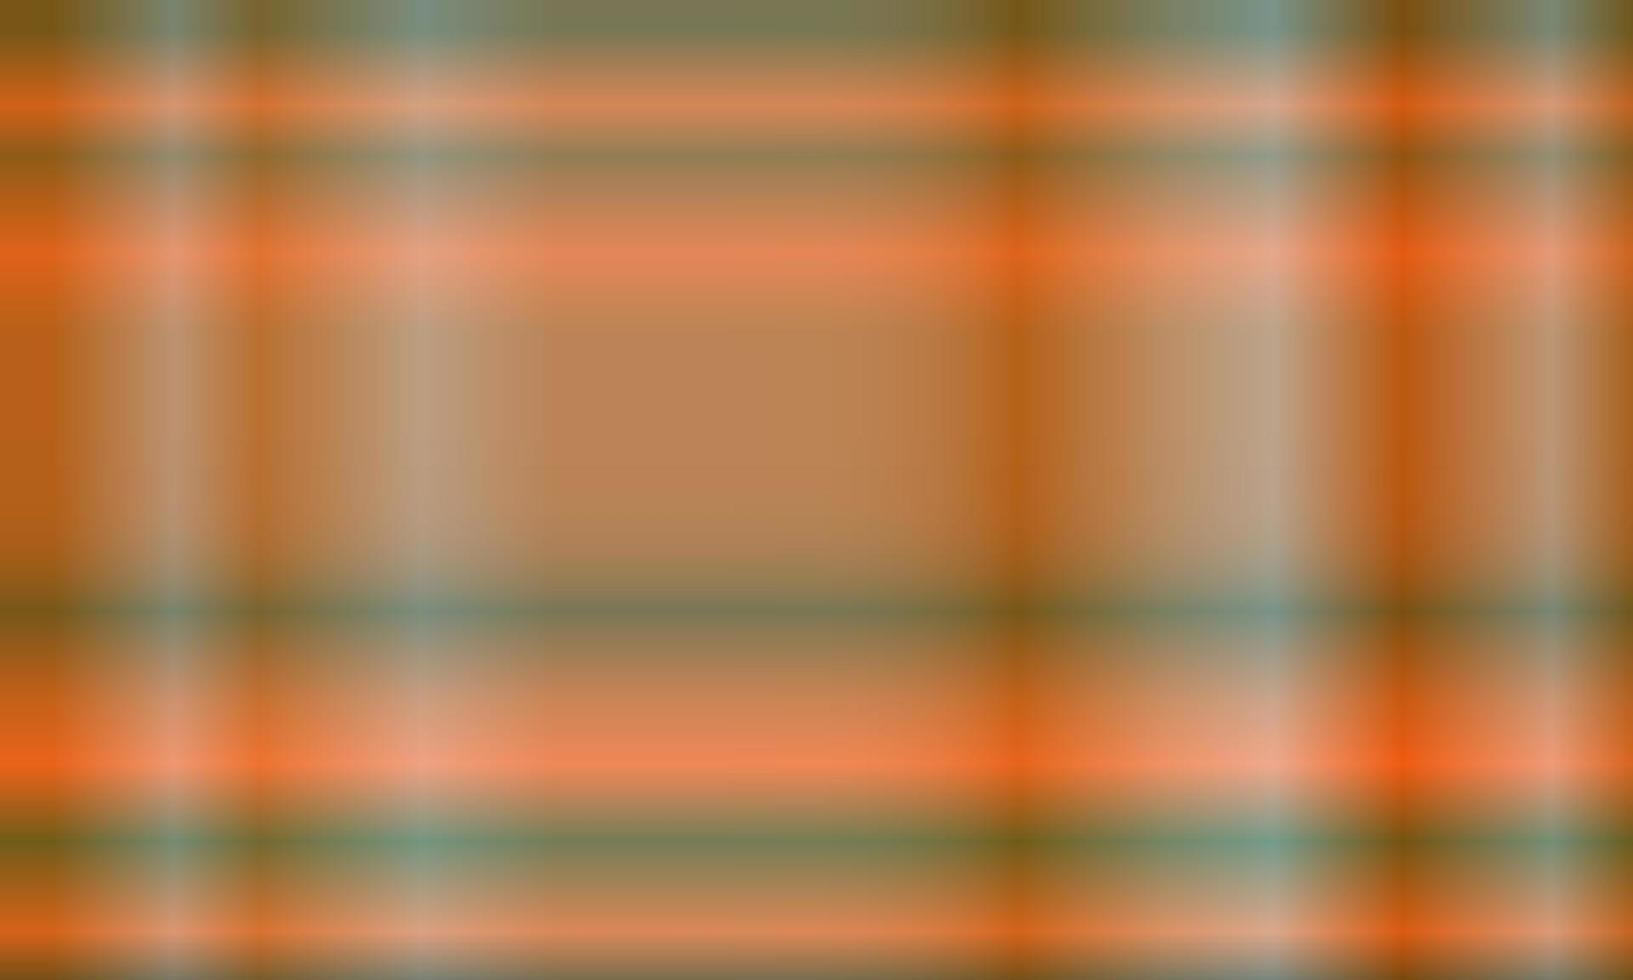 fondo abstracto naranja, azul y verde oscuro con líneas claras verticales y horizontales. patrón, degradado, desenfoque, estilo moderno y colorido. uso para fondo, telón de fondo, papel tapiz, pancarta o volante vector